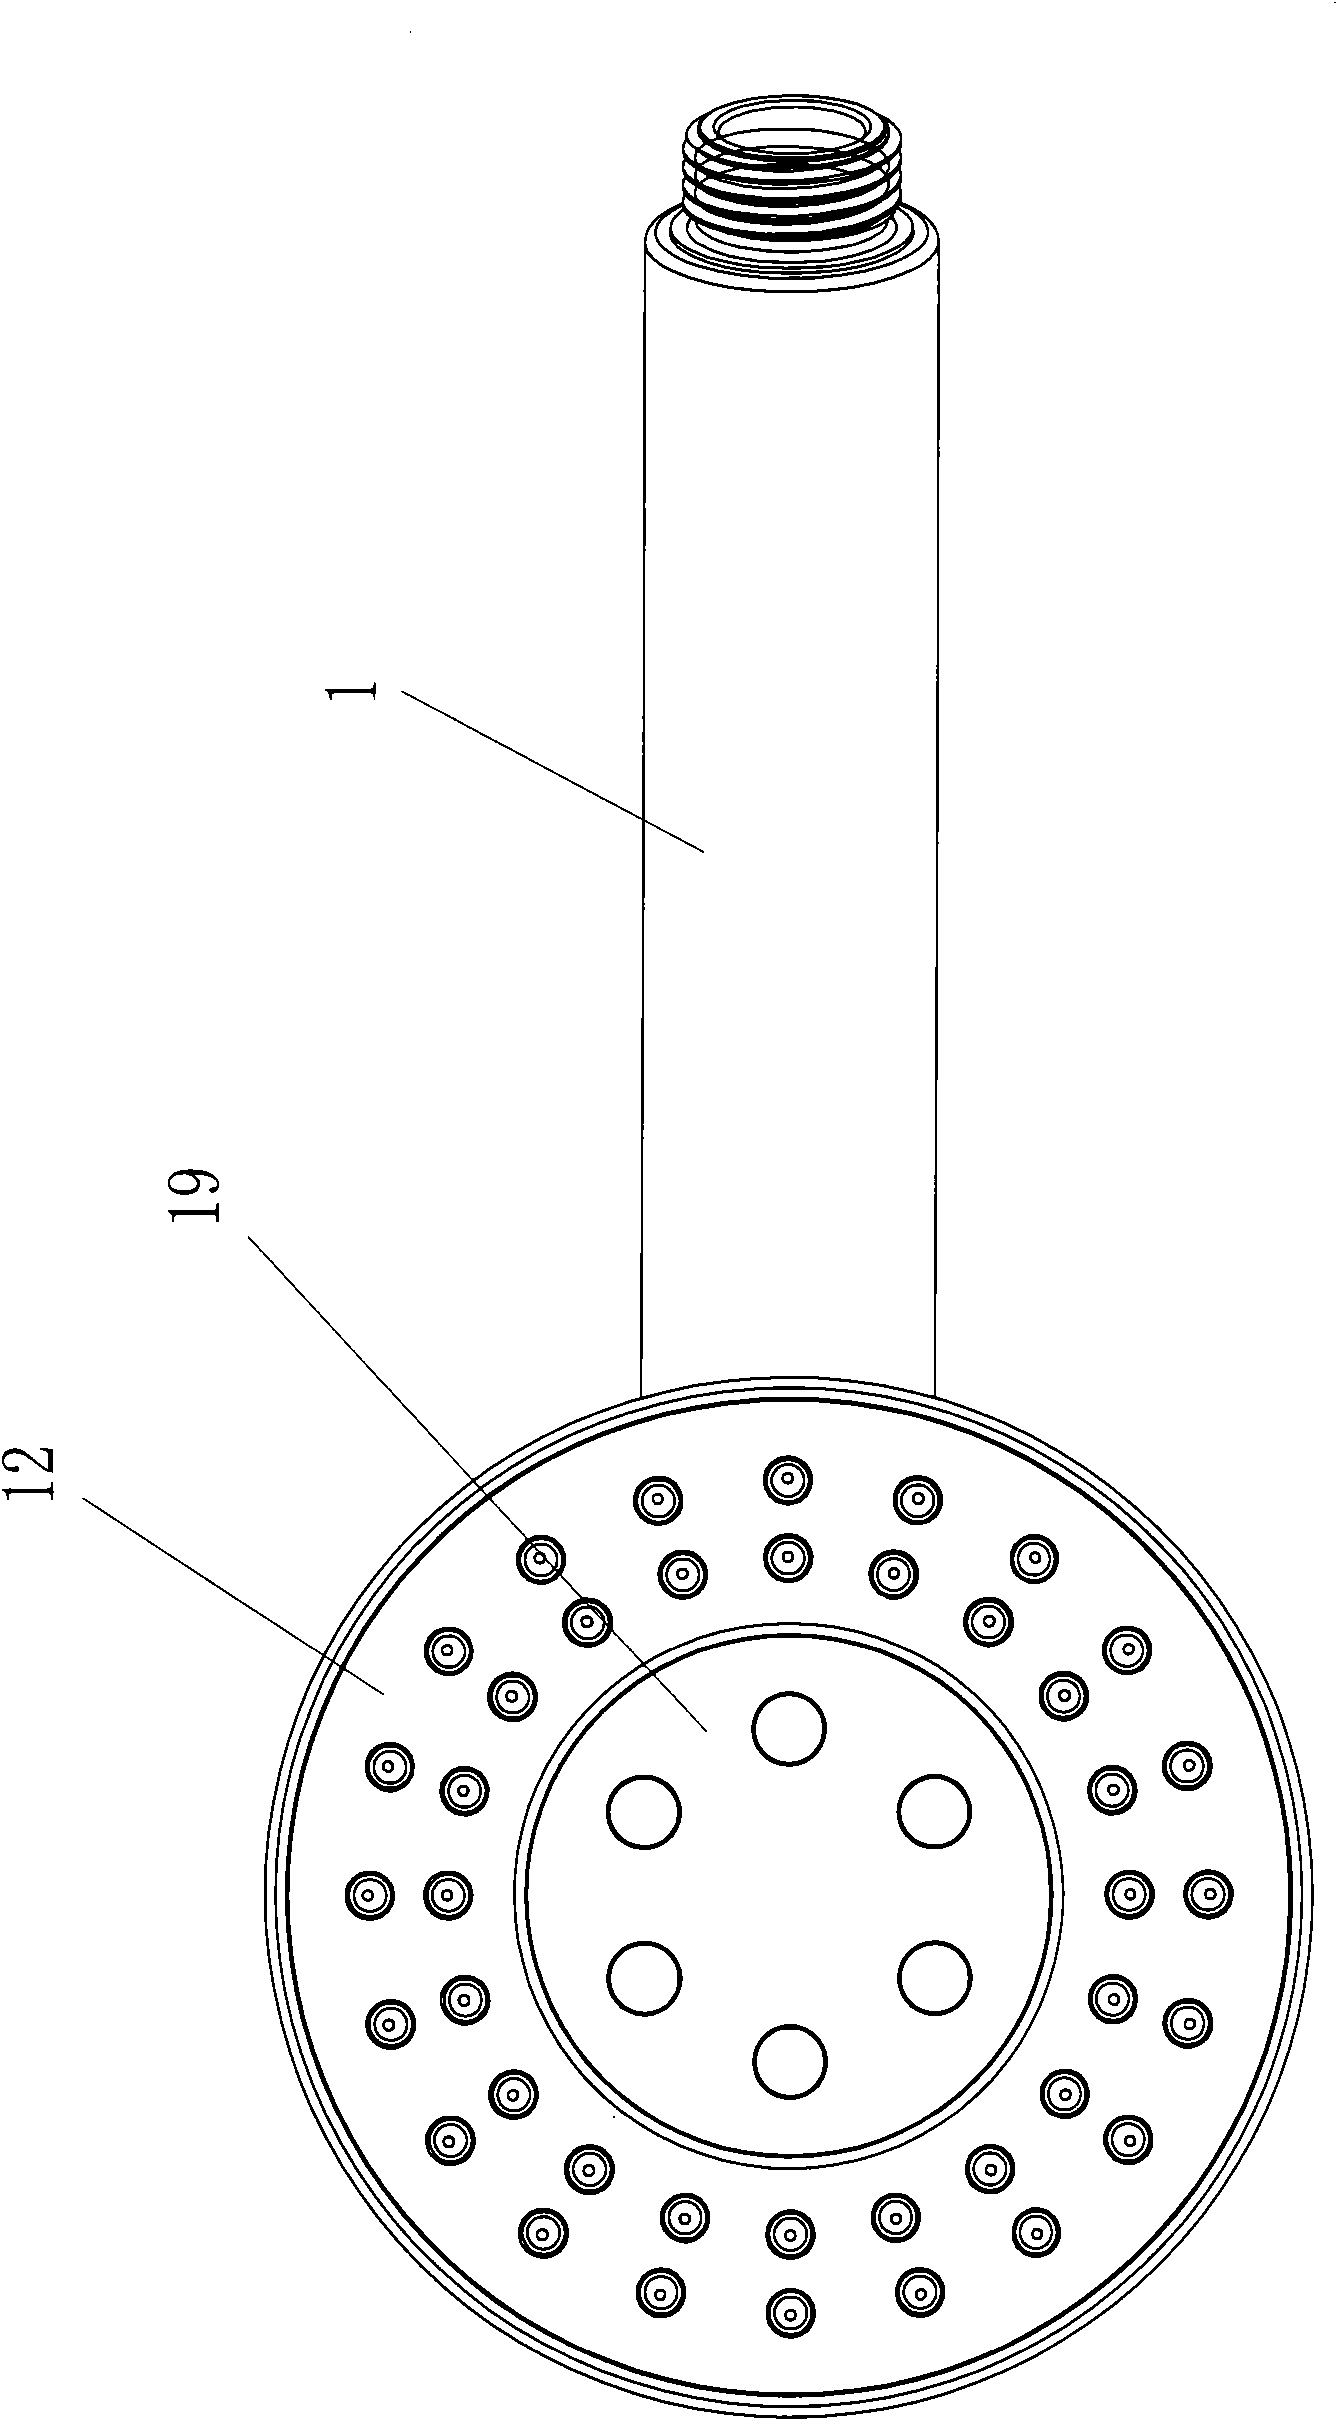 Sprinkler with novel massage structure